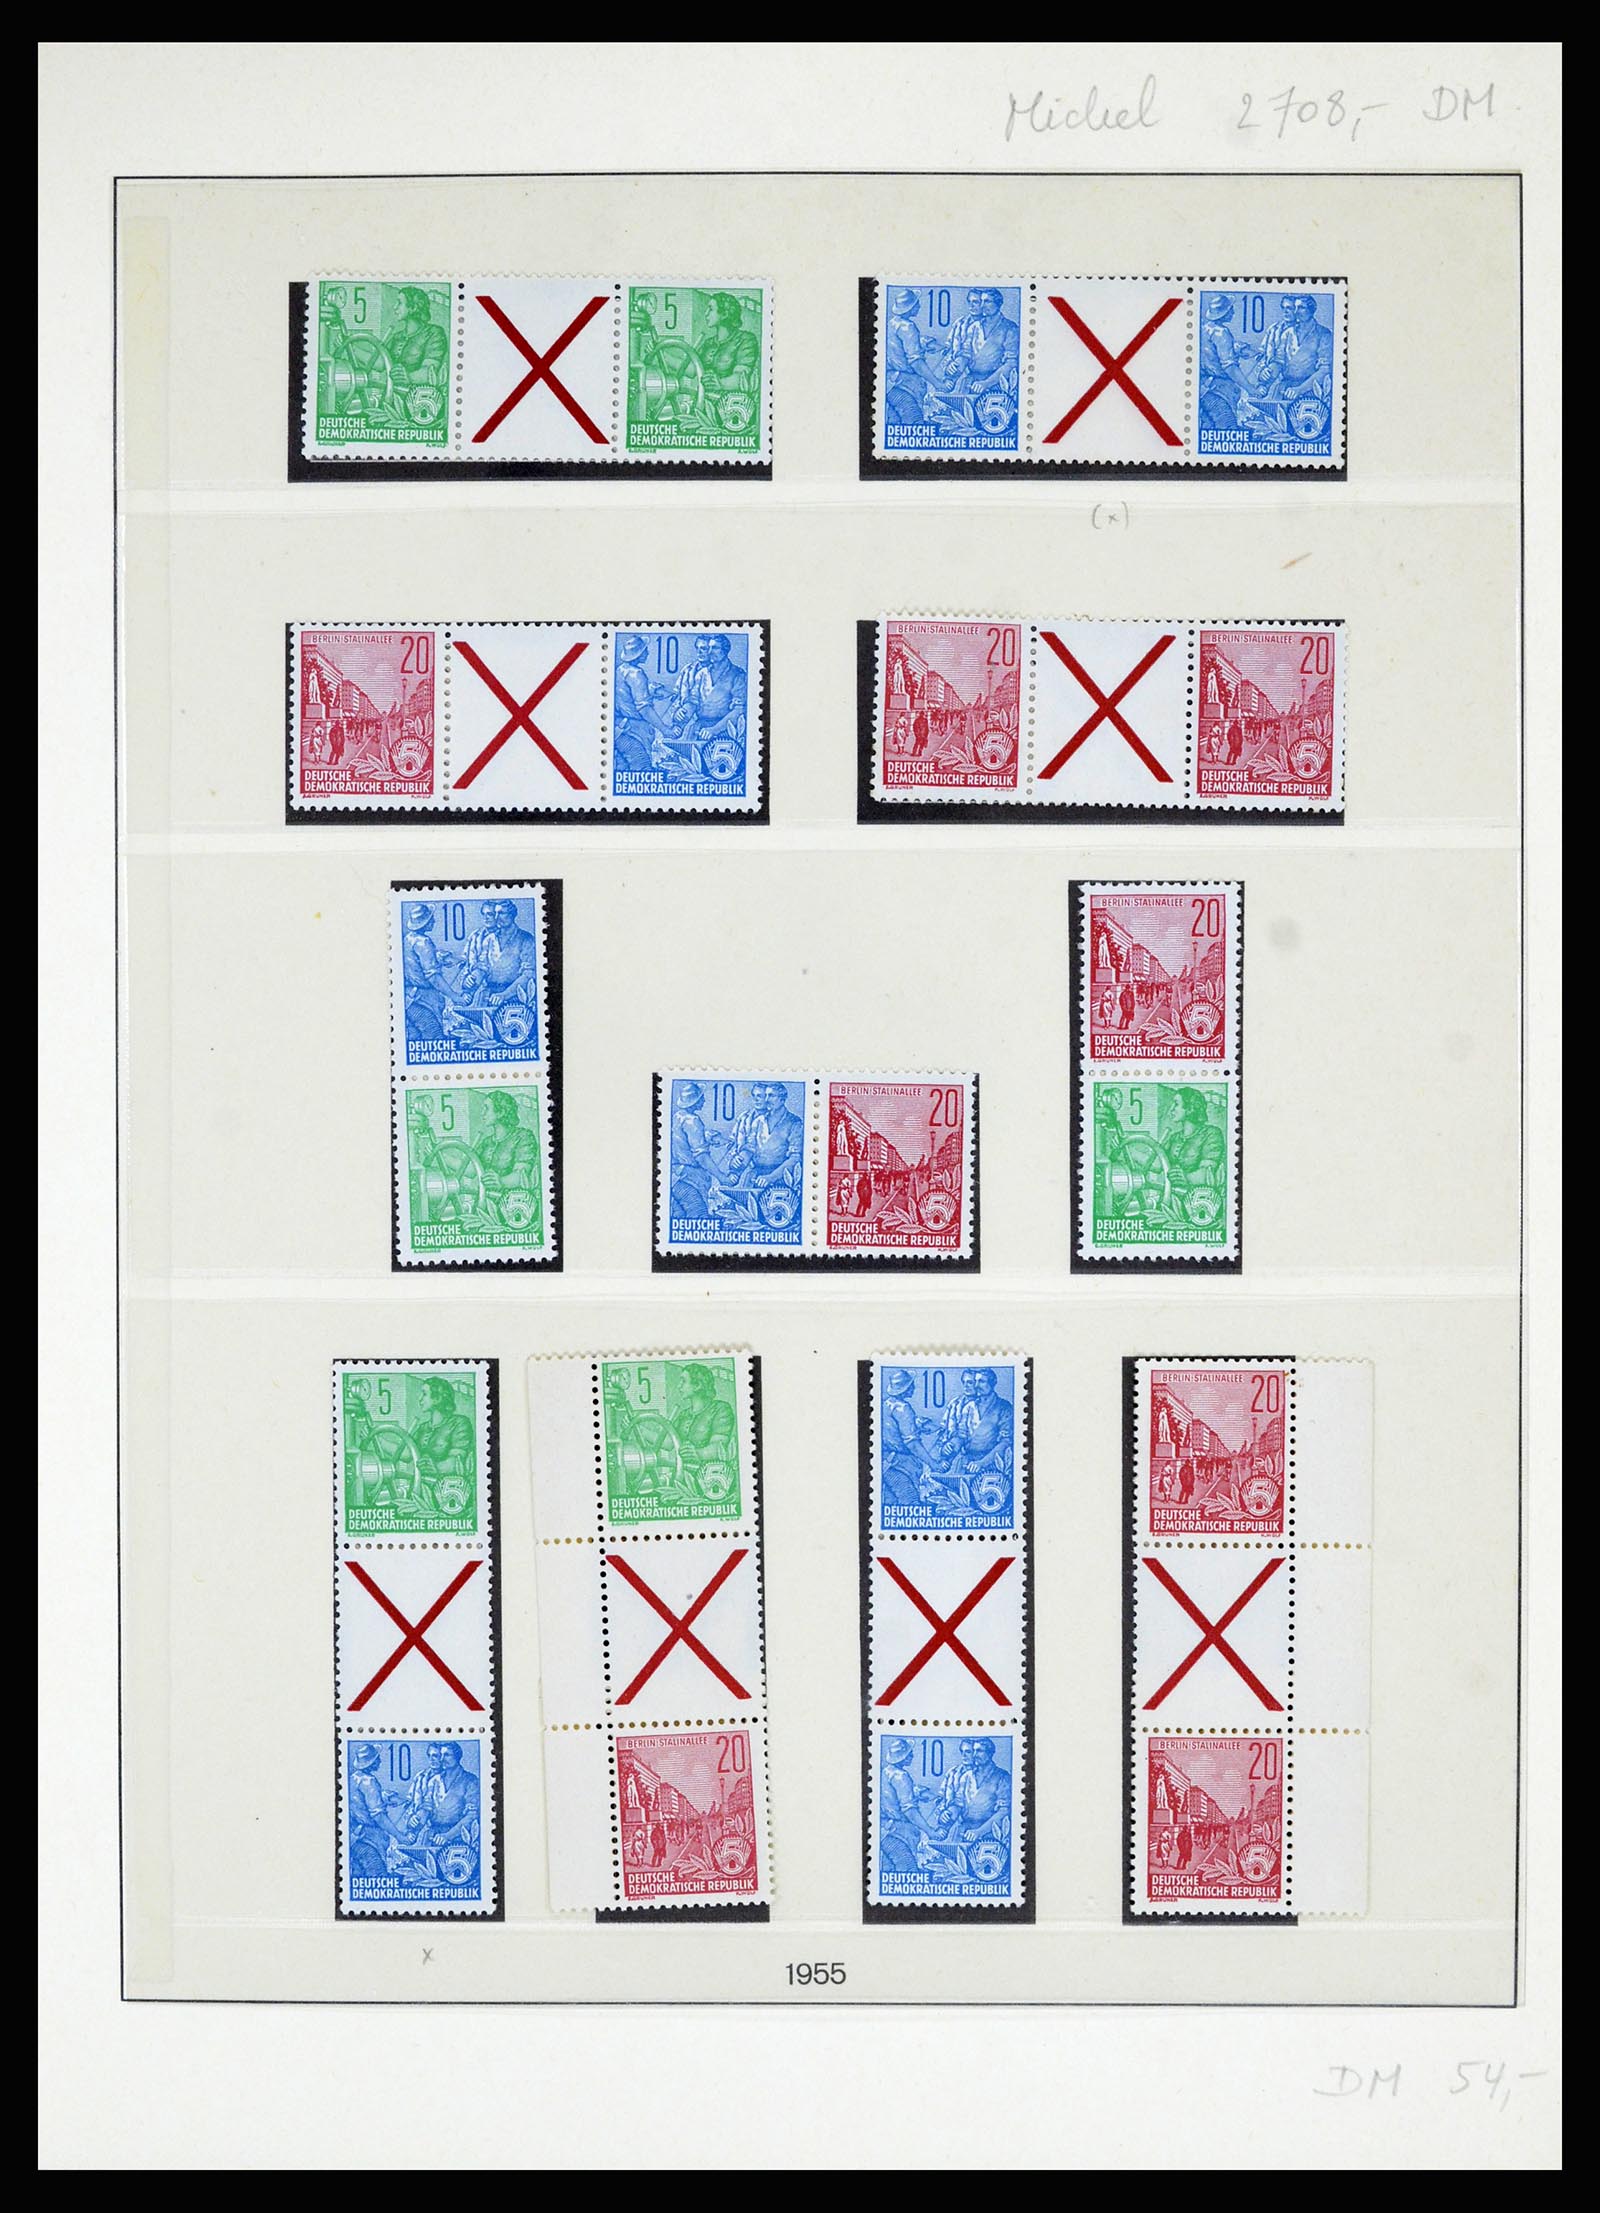 36879 001 - Postzegelverzameling 36879 DDR combinaties 1955-1981.